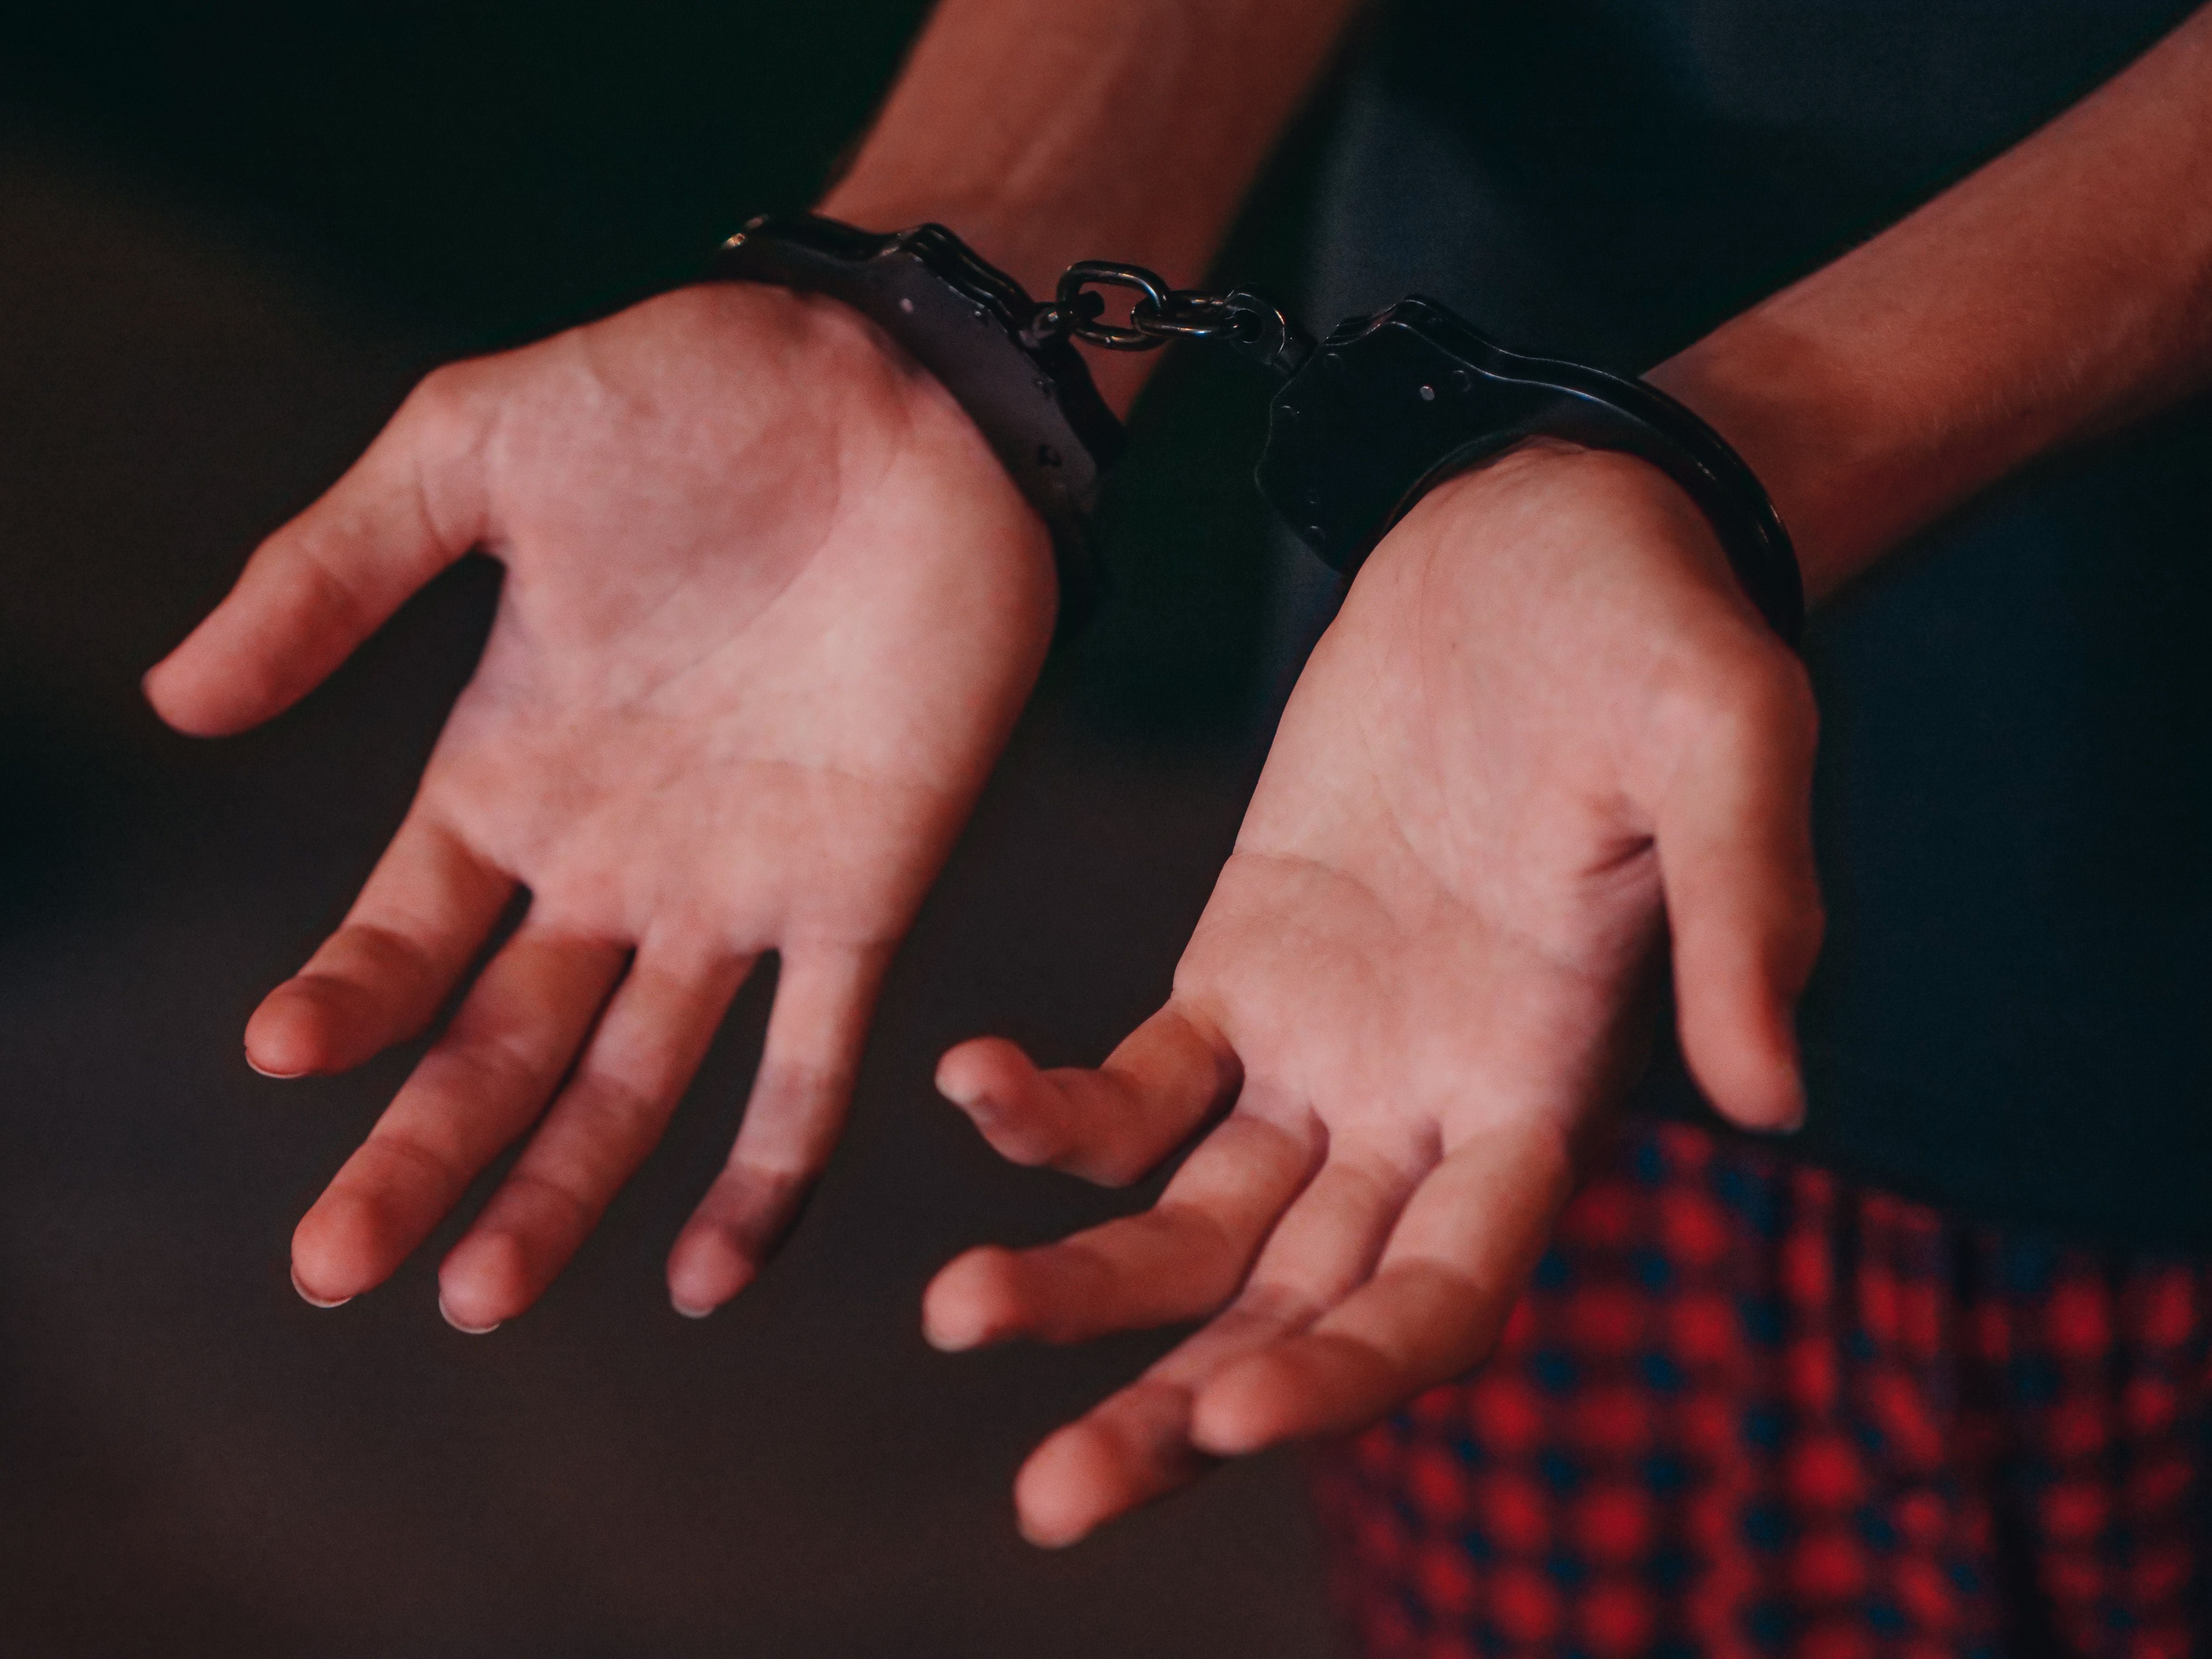 Detenido un hombre por presunta pornografía infantil en Quito